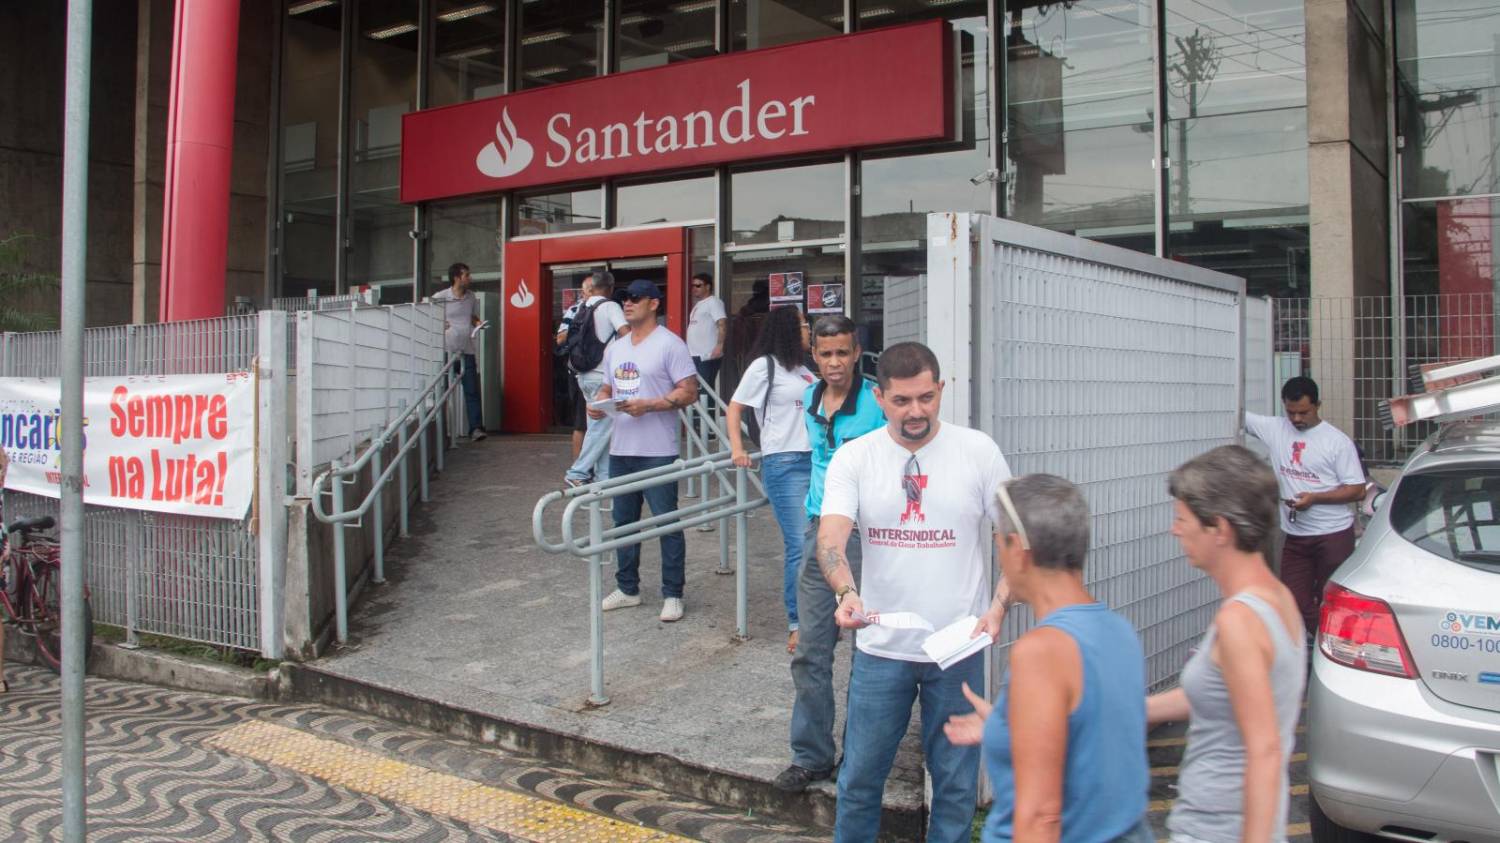 Escutou demissão no Santander, procure imediatamente o Sindicato